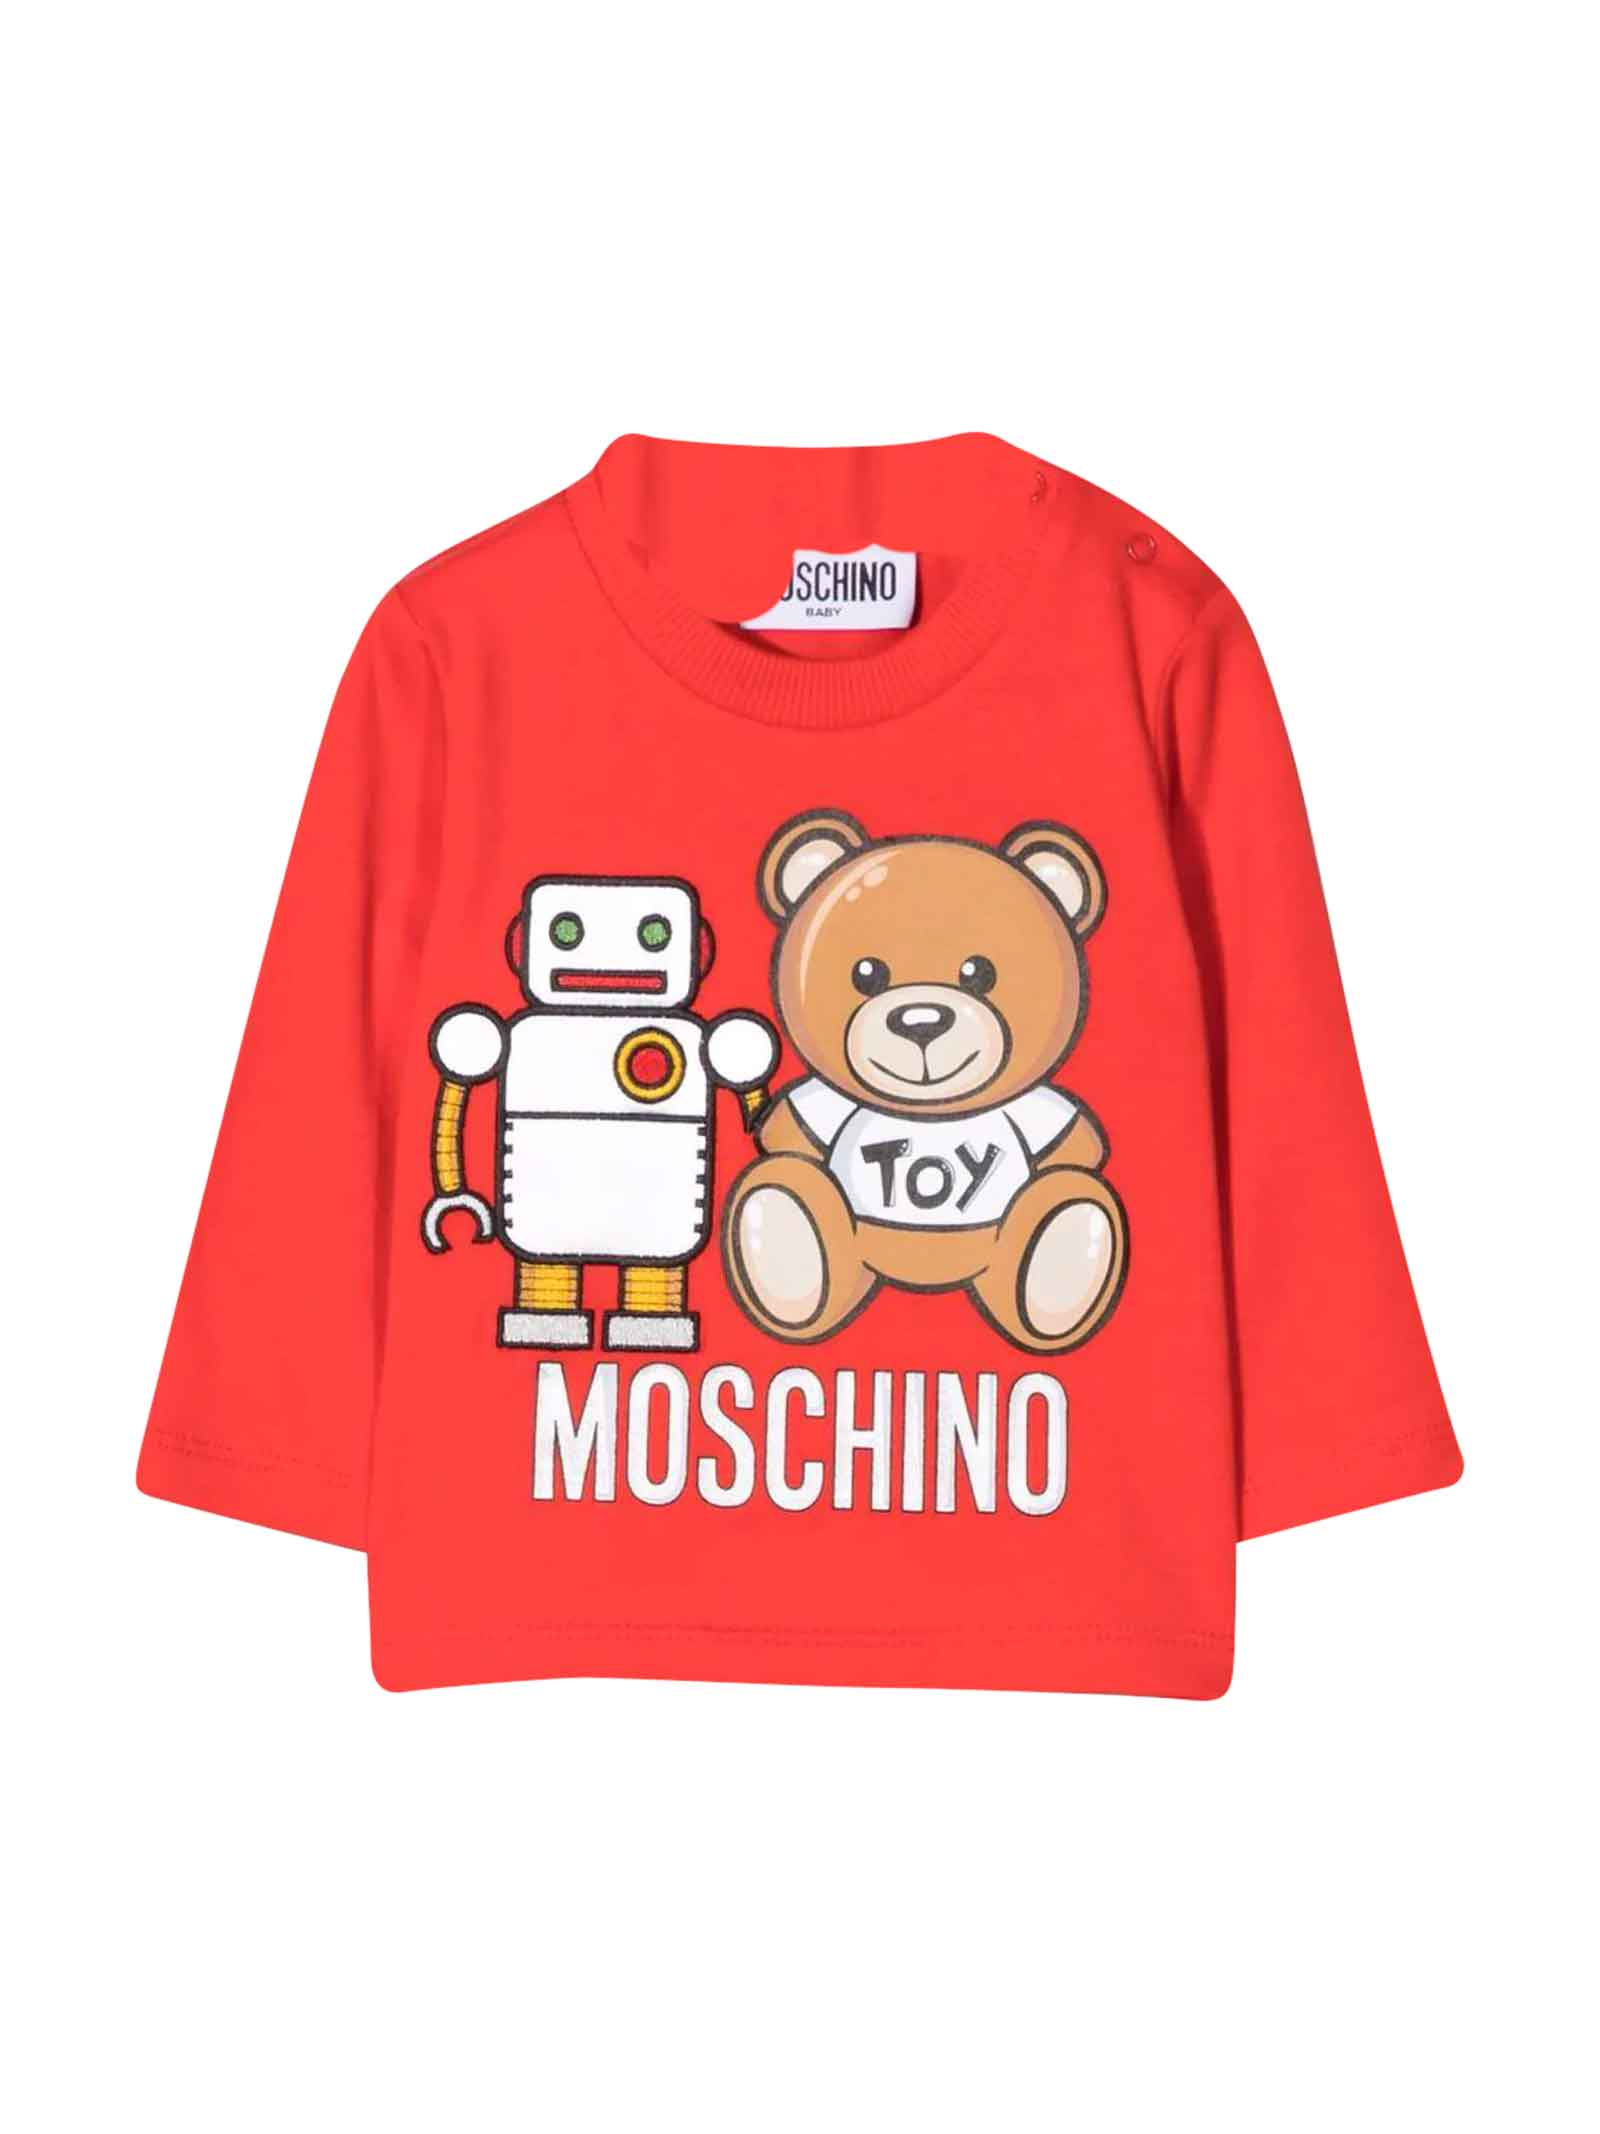 Moschino Red T-shirt Unisex